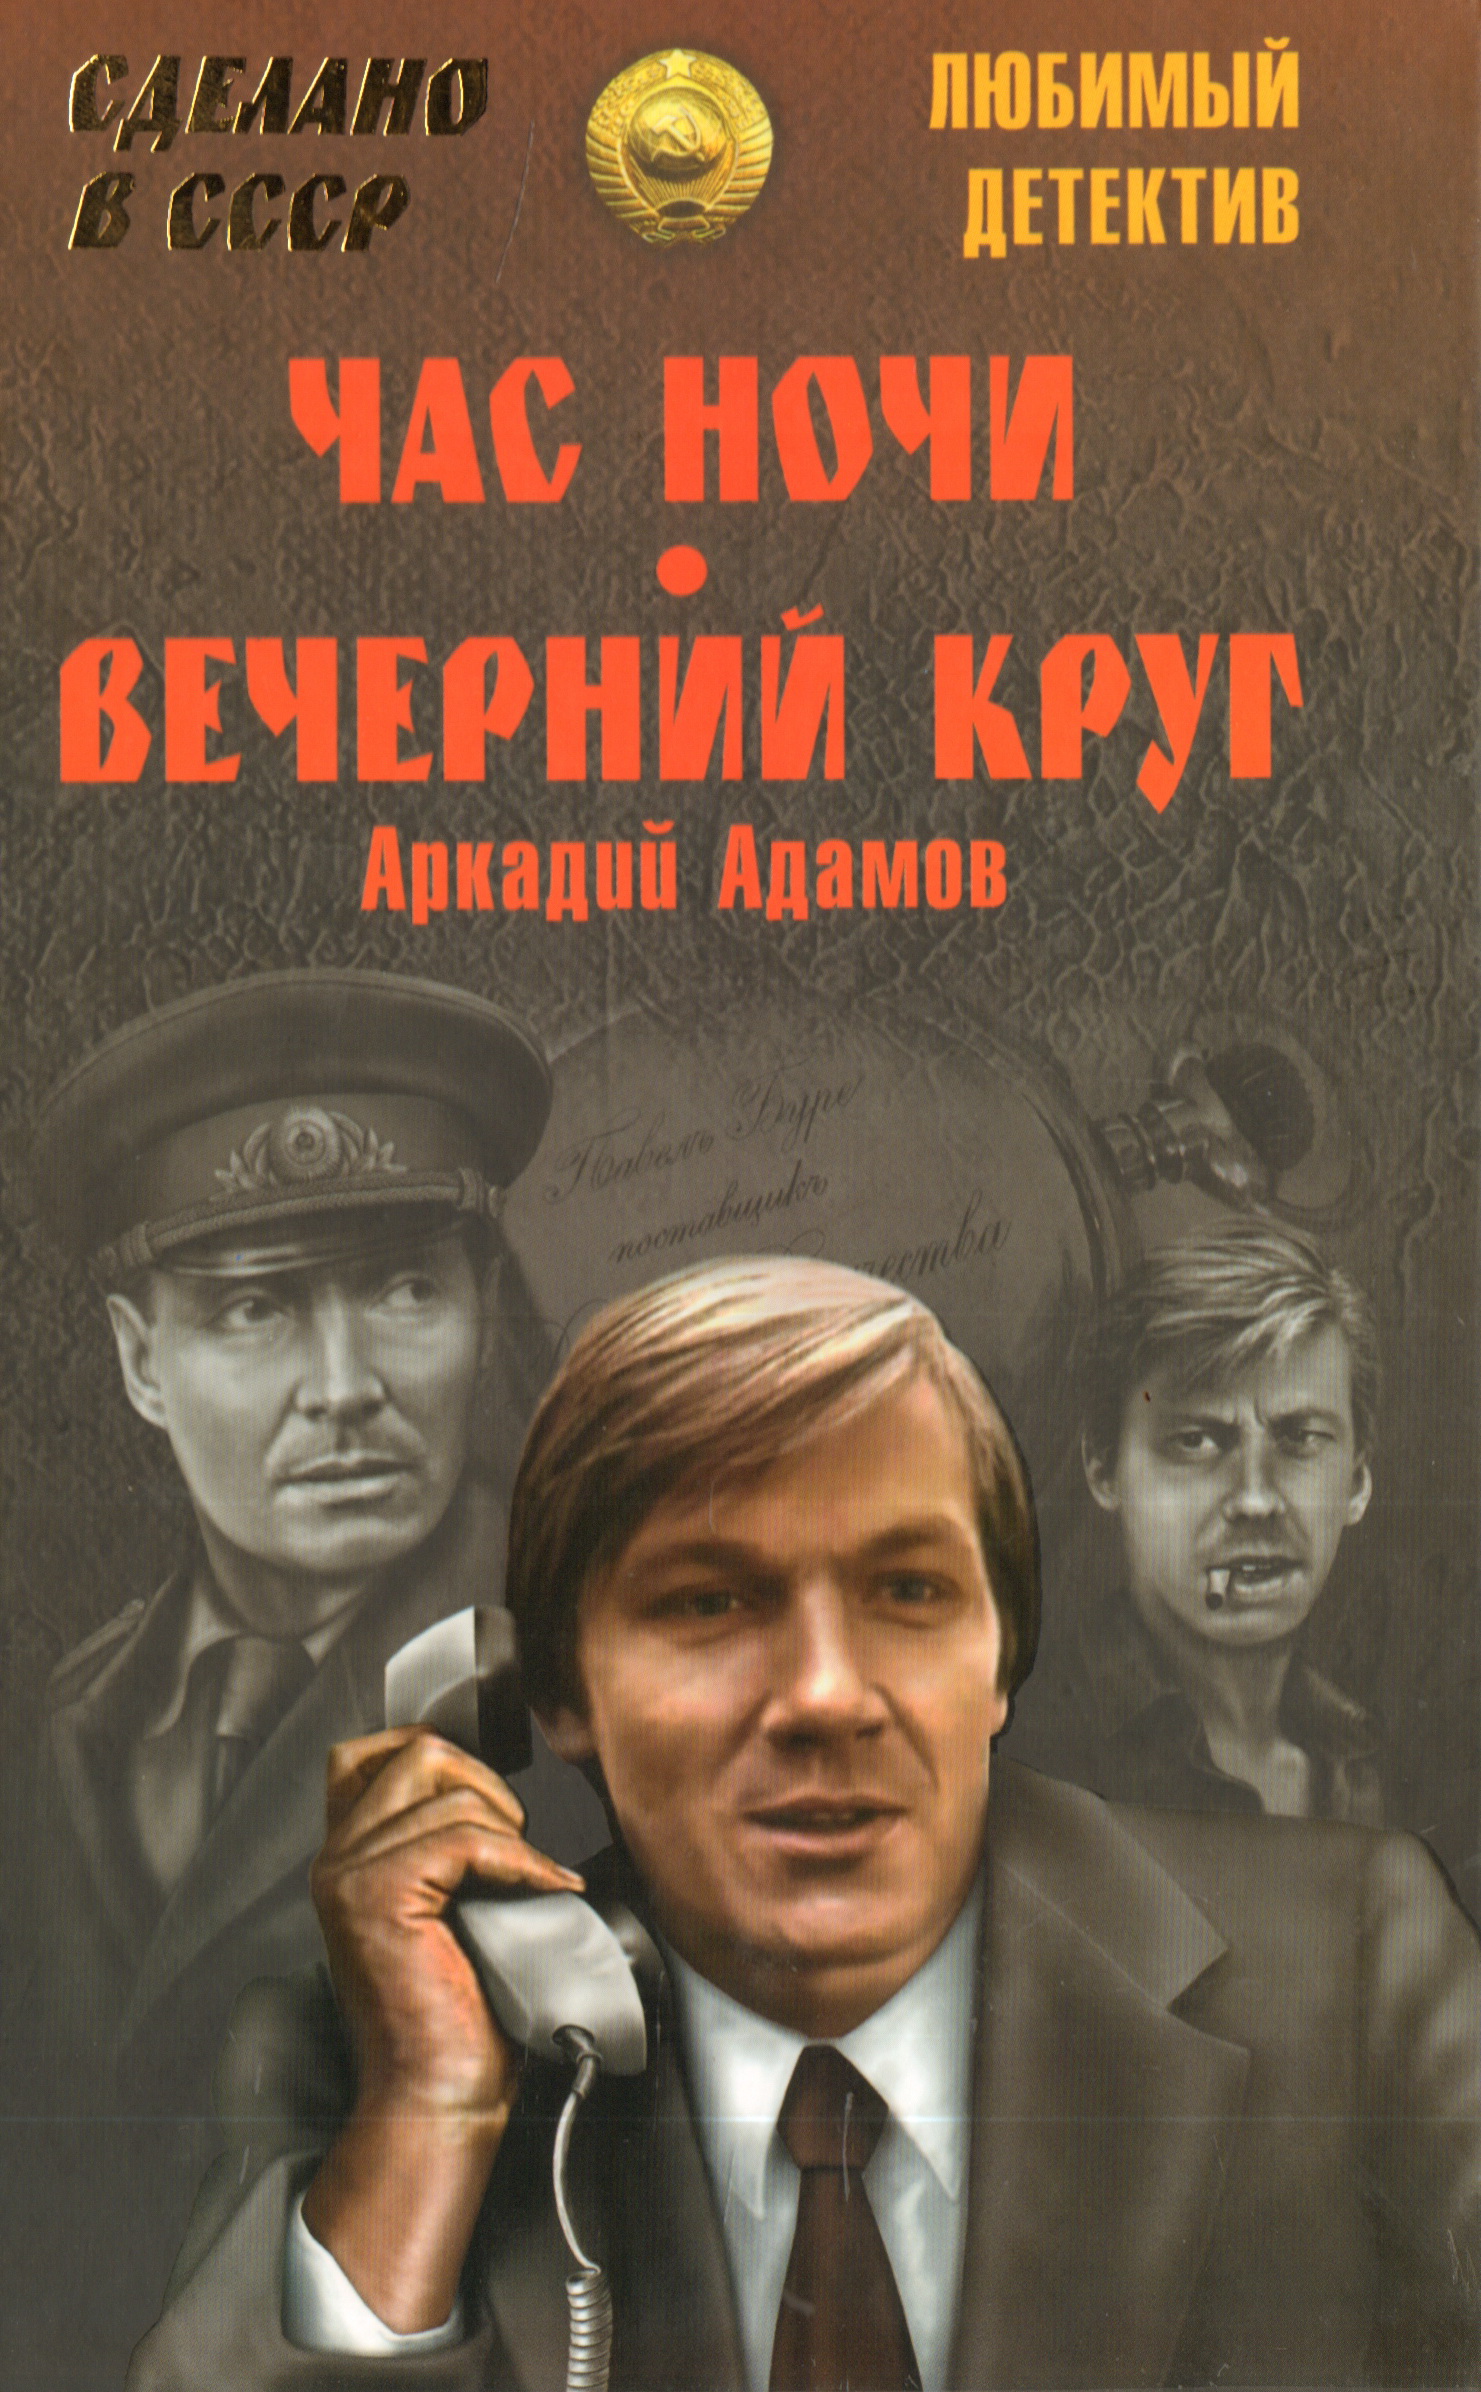 Новинки детективов слушать. Советские детективы. Советские детективы книги.